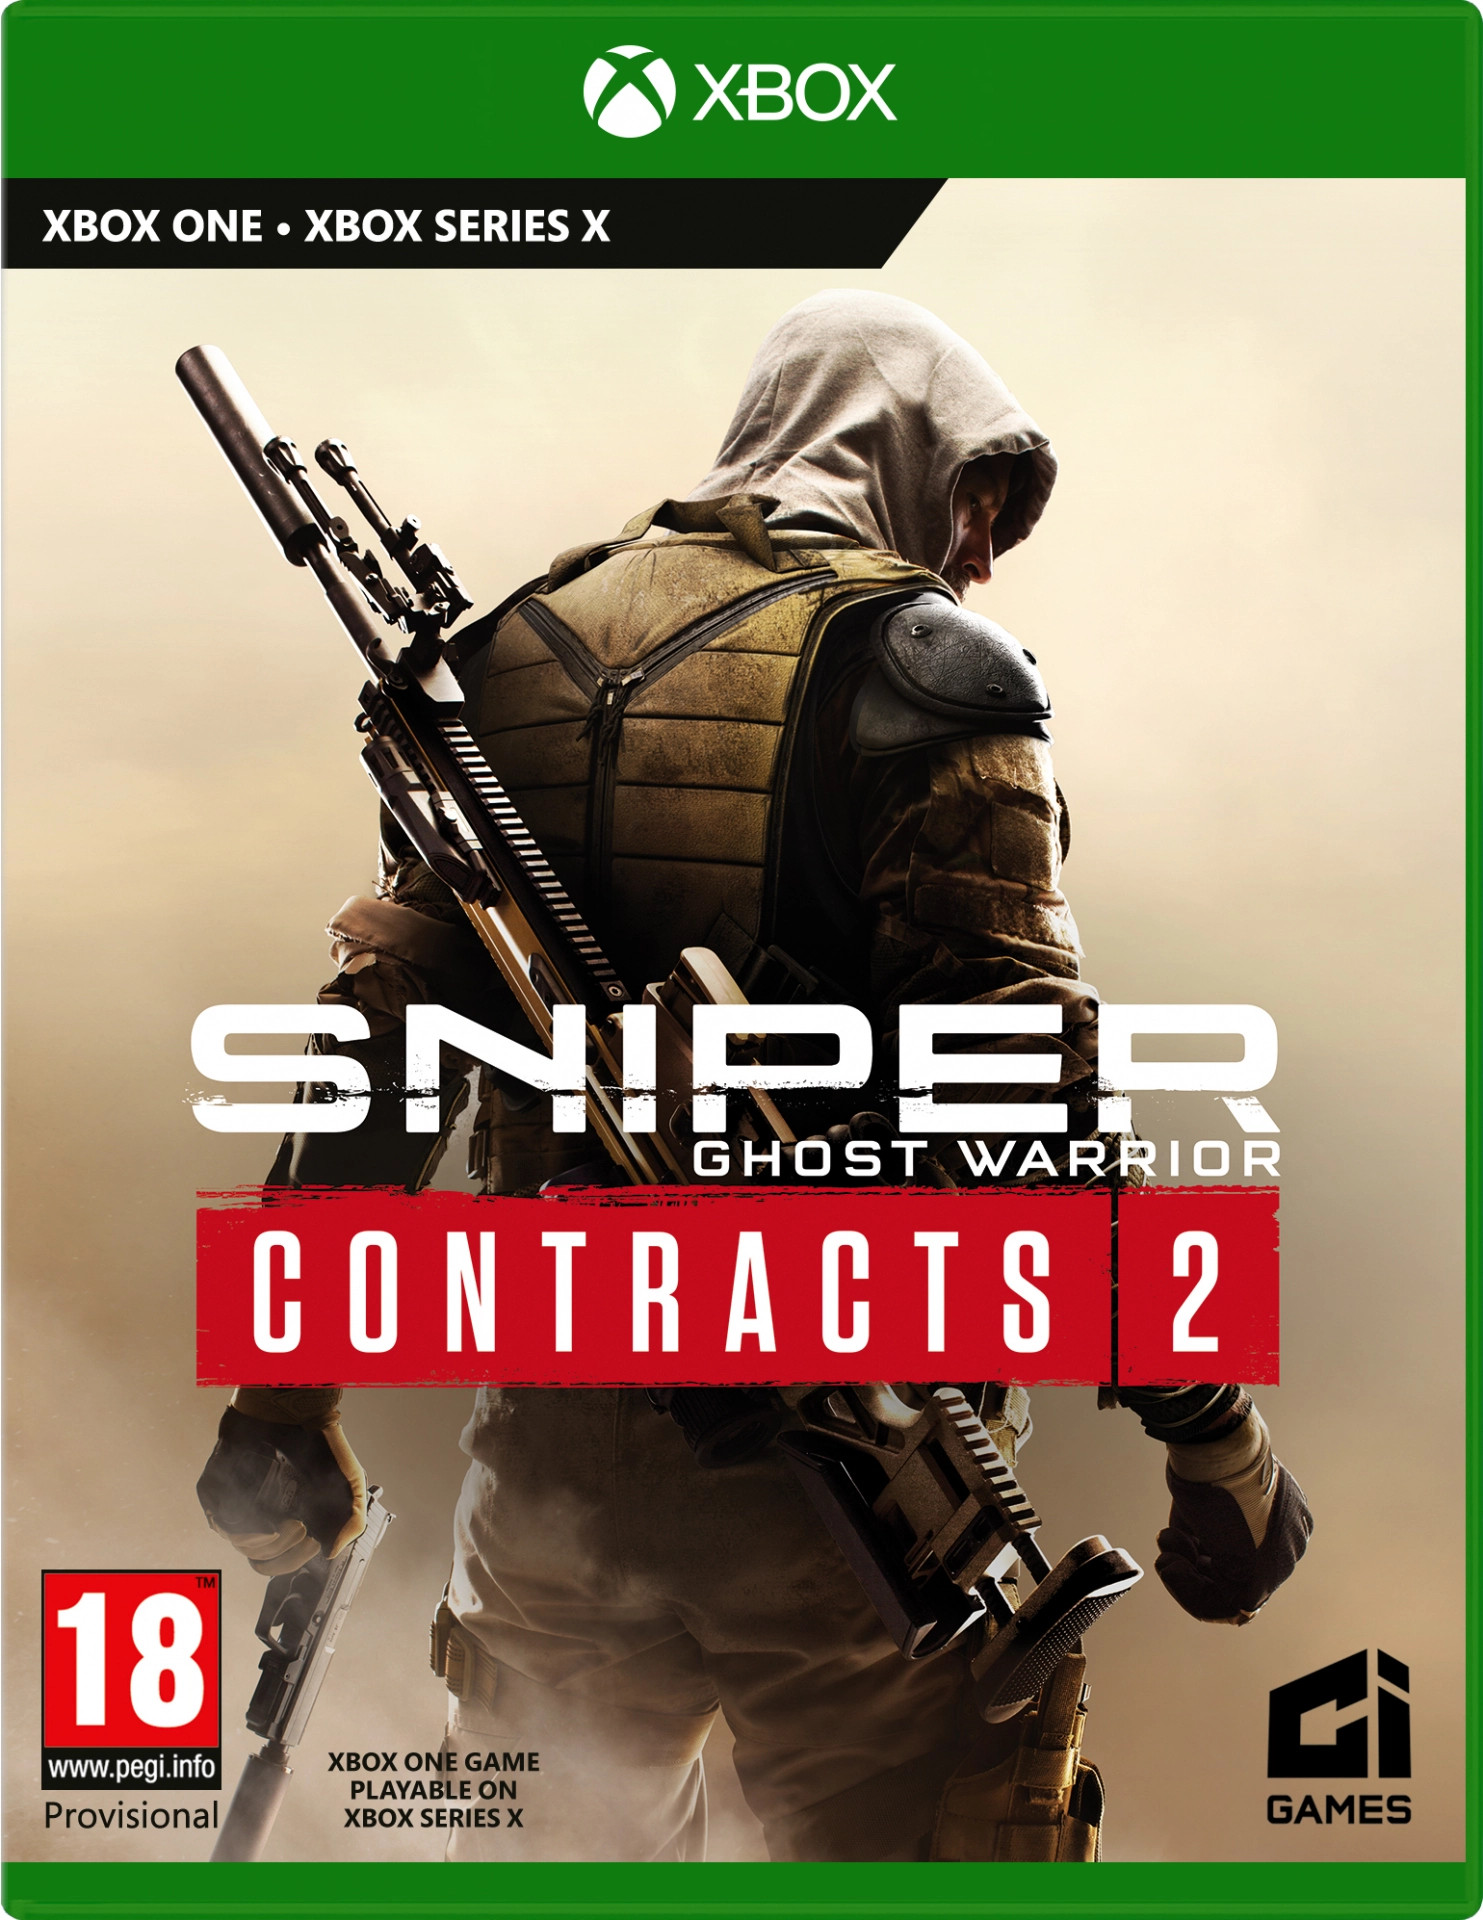 uitvinding Taalkunde maniac Nedgame gameshop: Sniper Ghost Warrior Contracts 2 (Xbox One) kopen